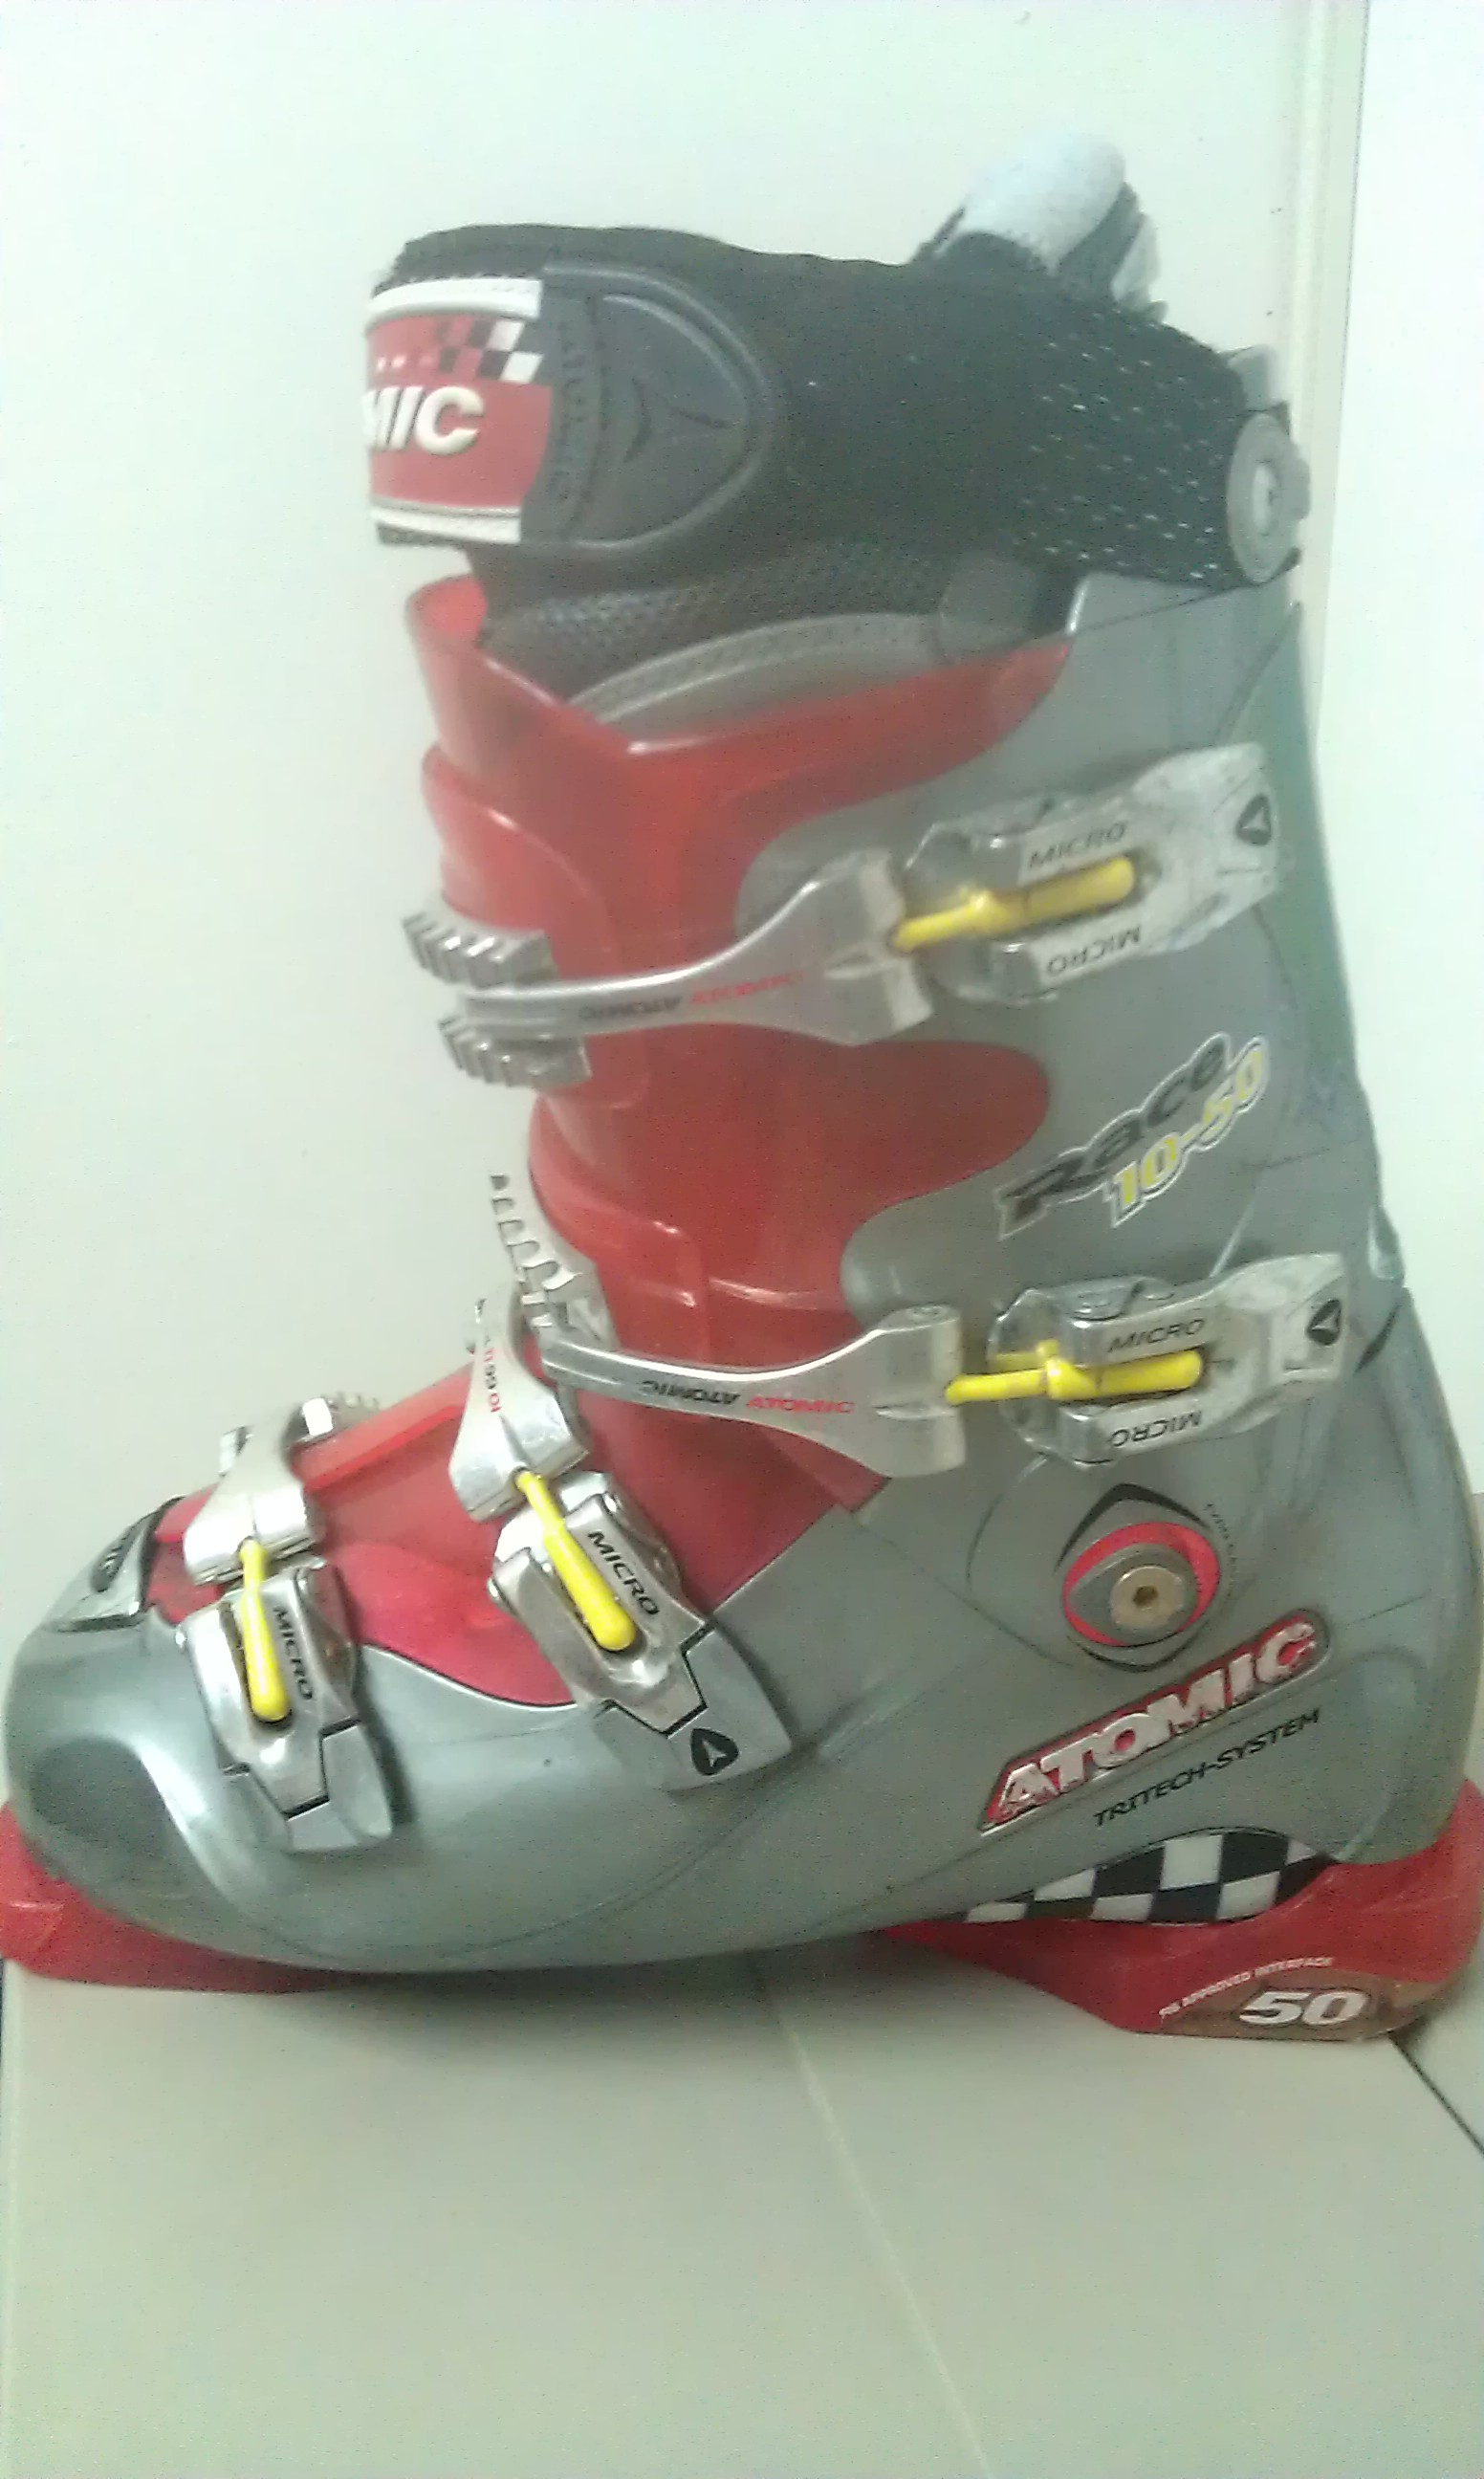 PD] Vendo scarponi sci Atomic 10-50 Race - Usati 43 (312 mm) | SkiForum -  Sci, turismo, sport e passione